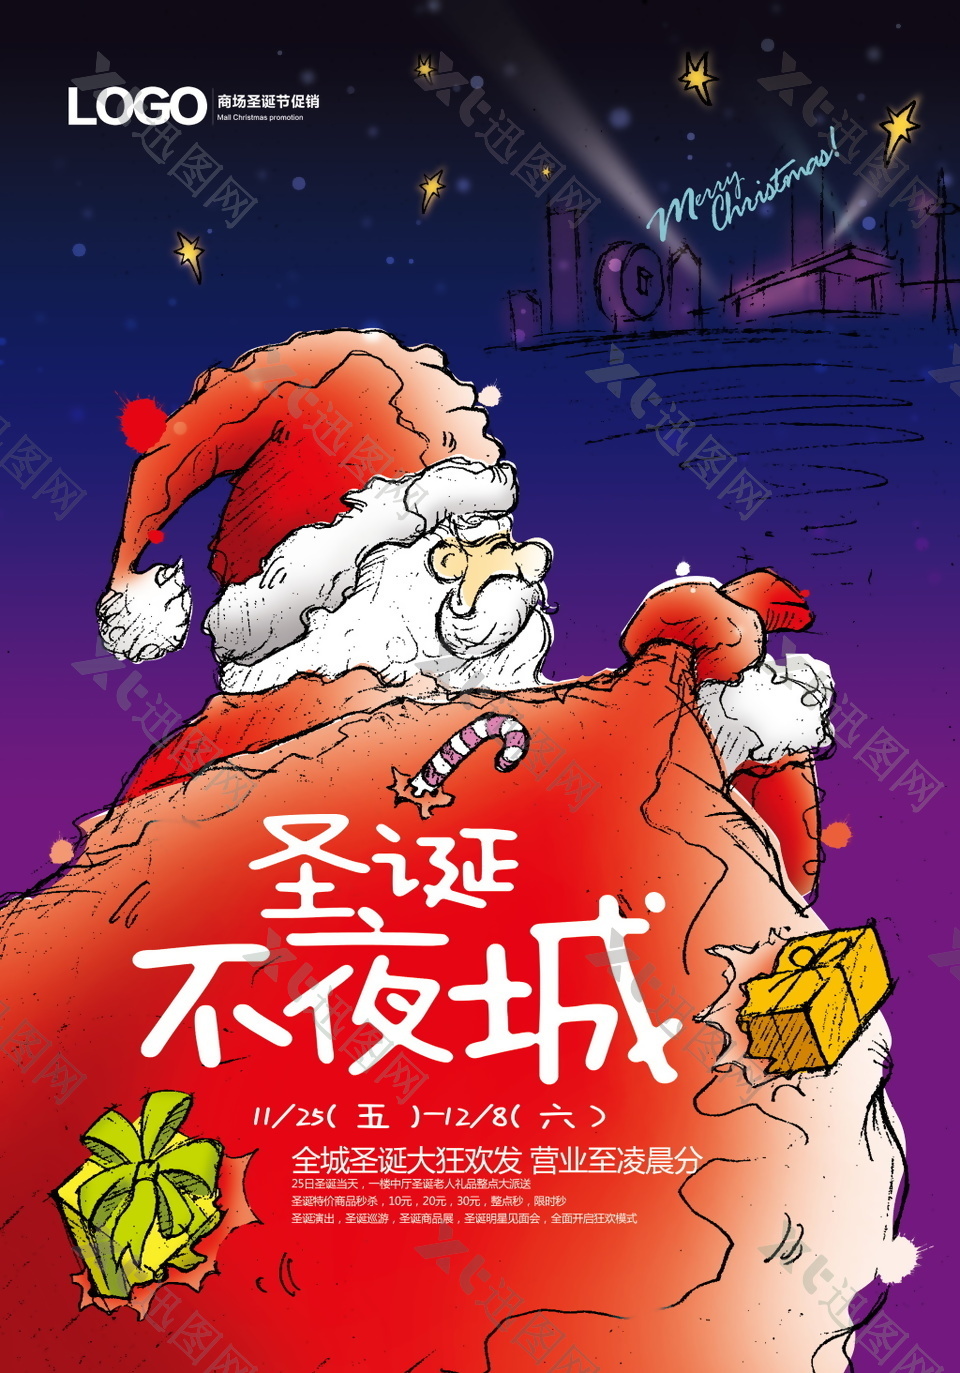 2017圣诞节不夜城促销海报设计